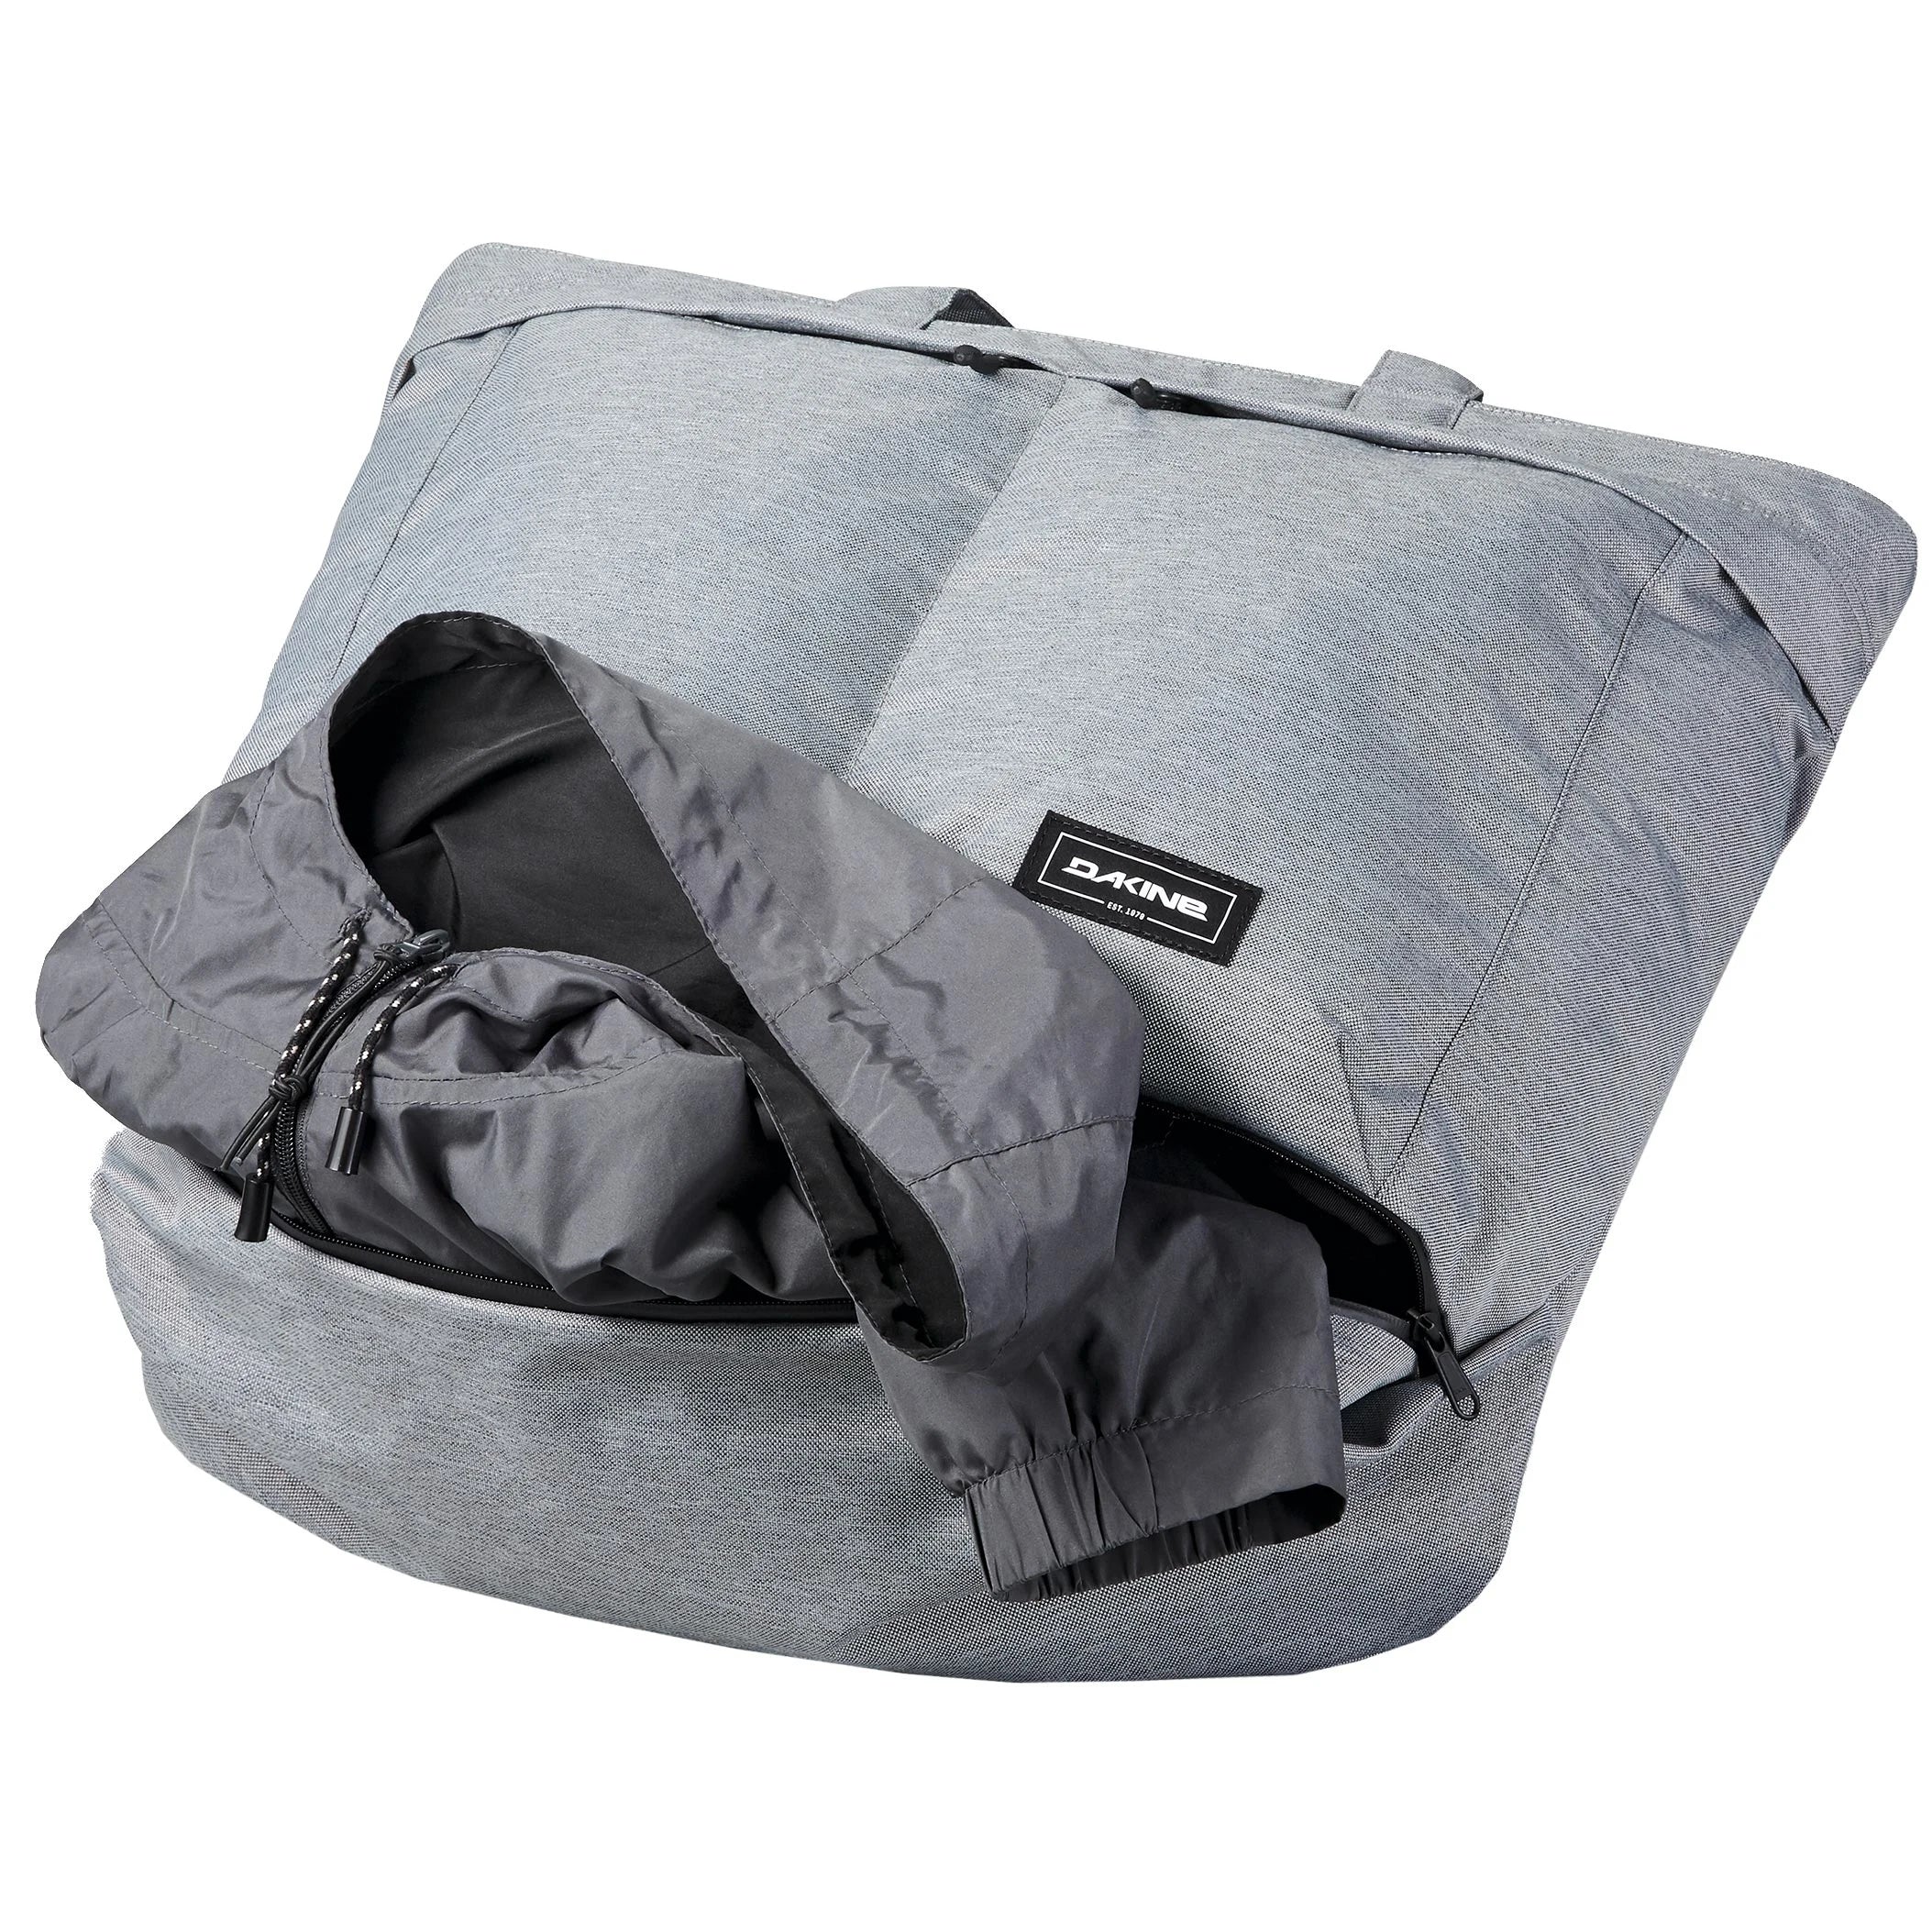 Dakine Packs & Bags Verge Weekender 60 cm - Black Ripstop